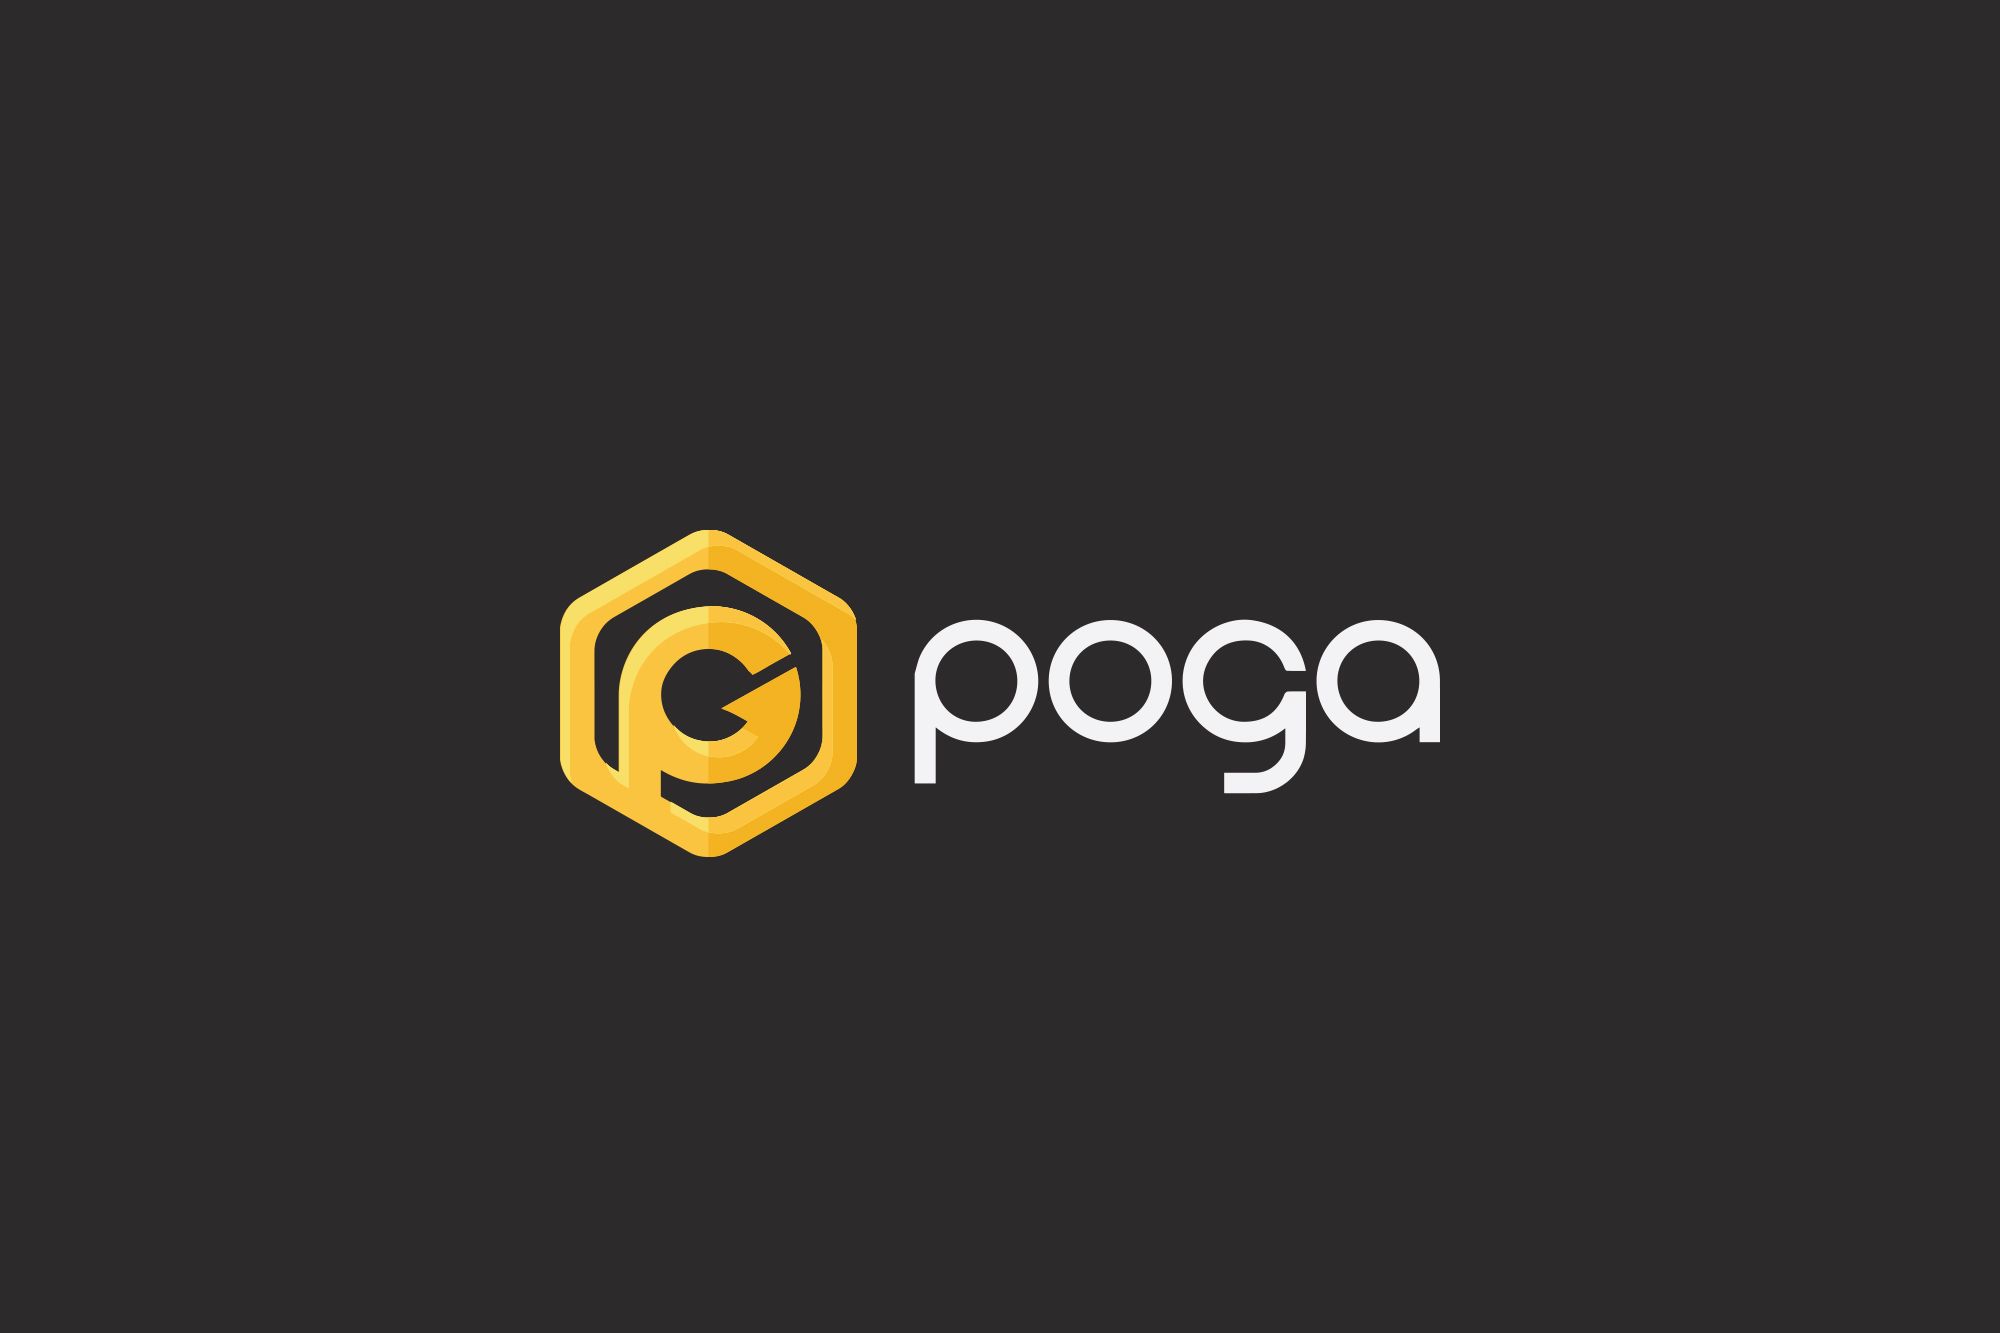 Логотип для POGA или POGA.pl - дизайнер Da4erry